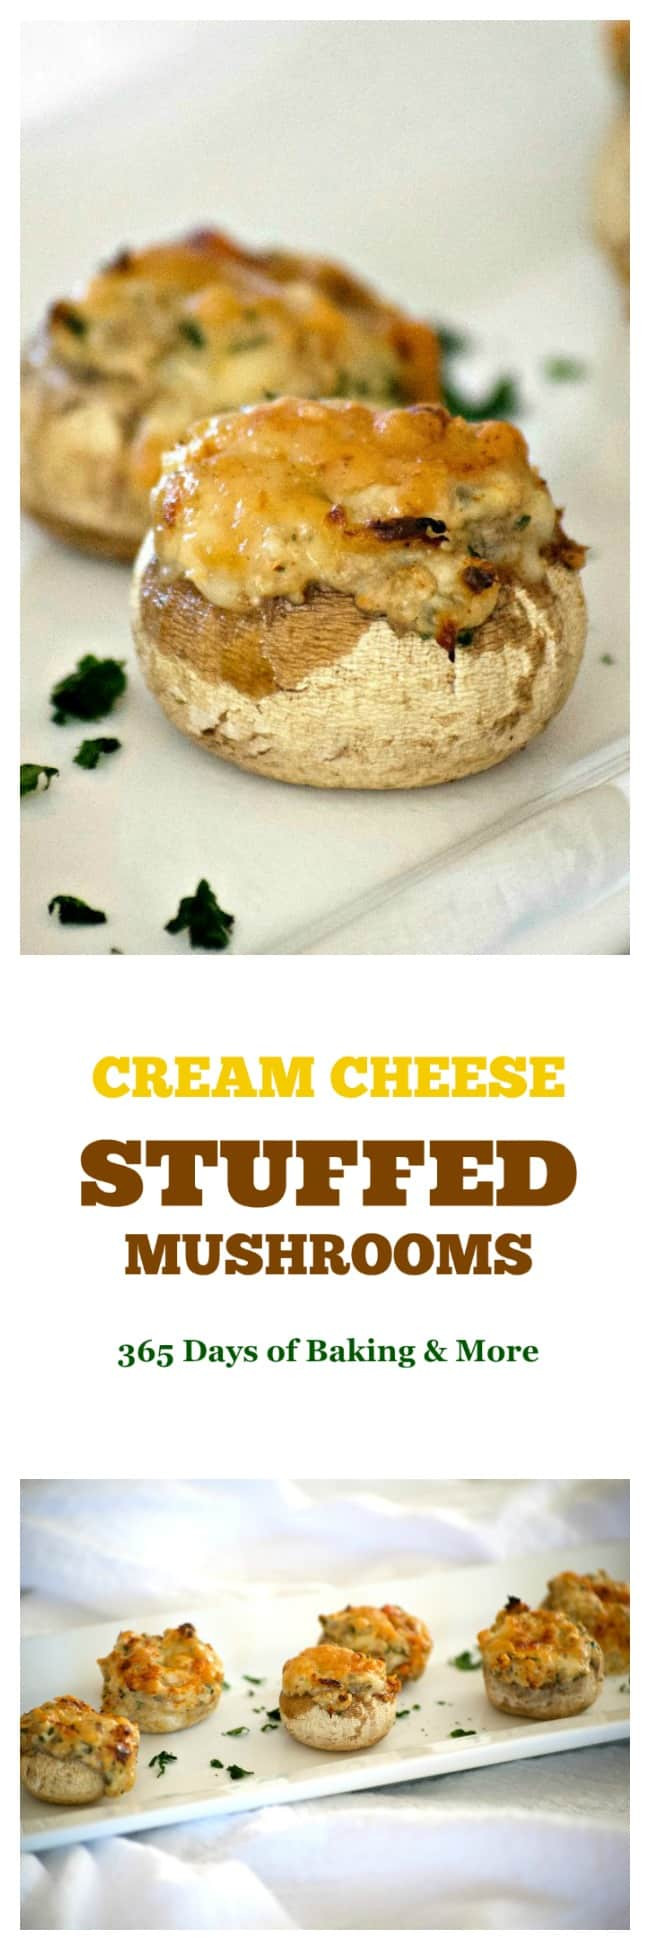 Easy Stuffed Mushrooms Cream Cheese
 Cream Cheese Stuffed Mushrooms 365 Days of Baking and More